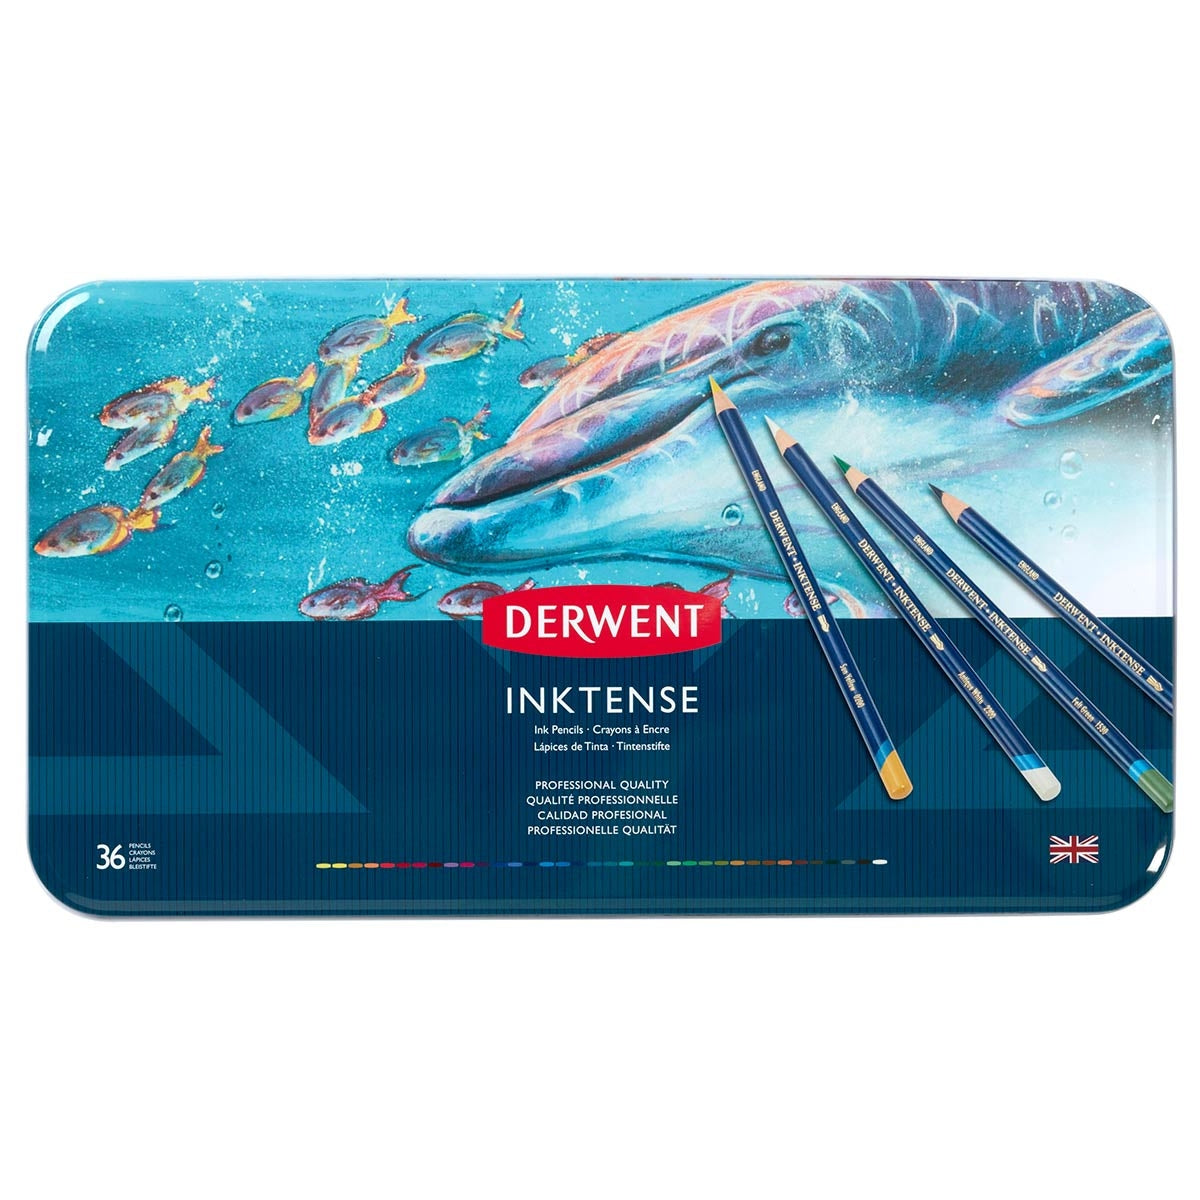 Derwent - Inktense Pencil - 36 Tin